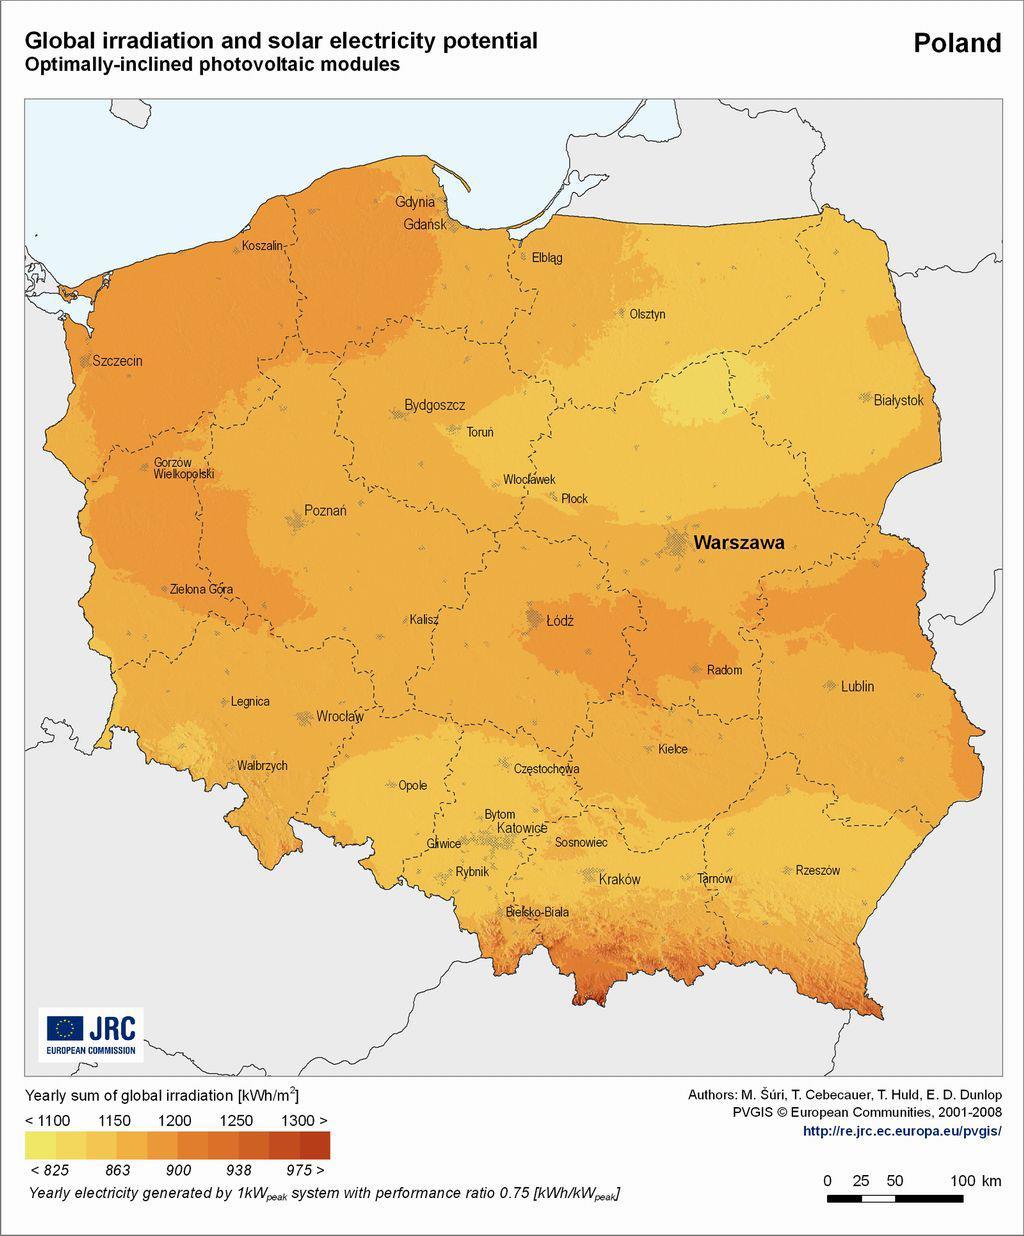 Promieniowanie energii słonecznej na terenie gminy Na poniższej mapie przedstawiono roczne sumy promieniowania słonecznego i solarny potencjał energetyczny dla Polski w 2008 r. Rys.